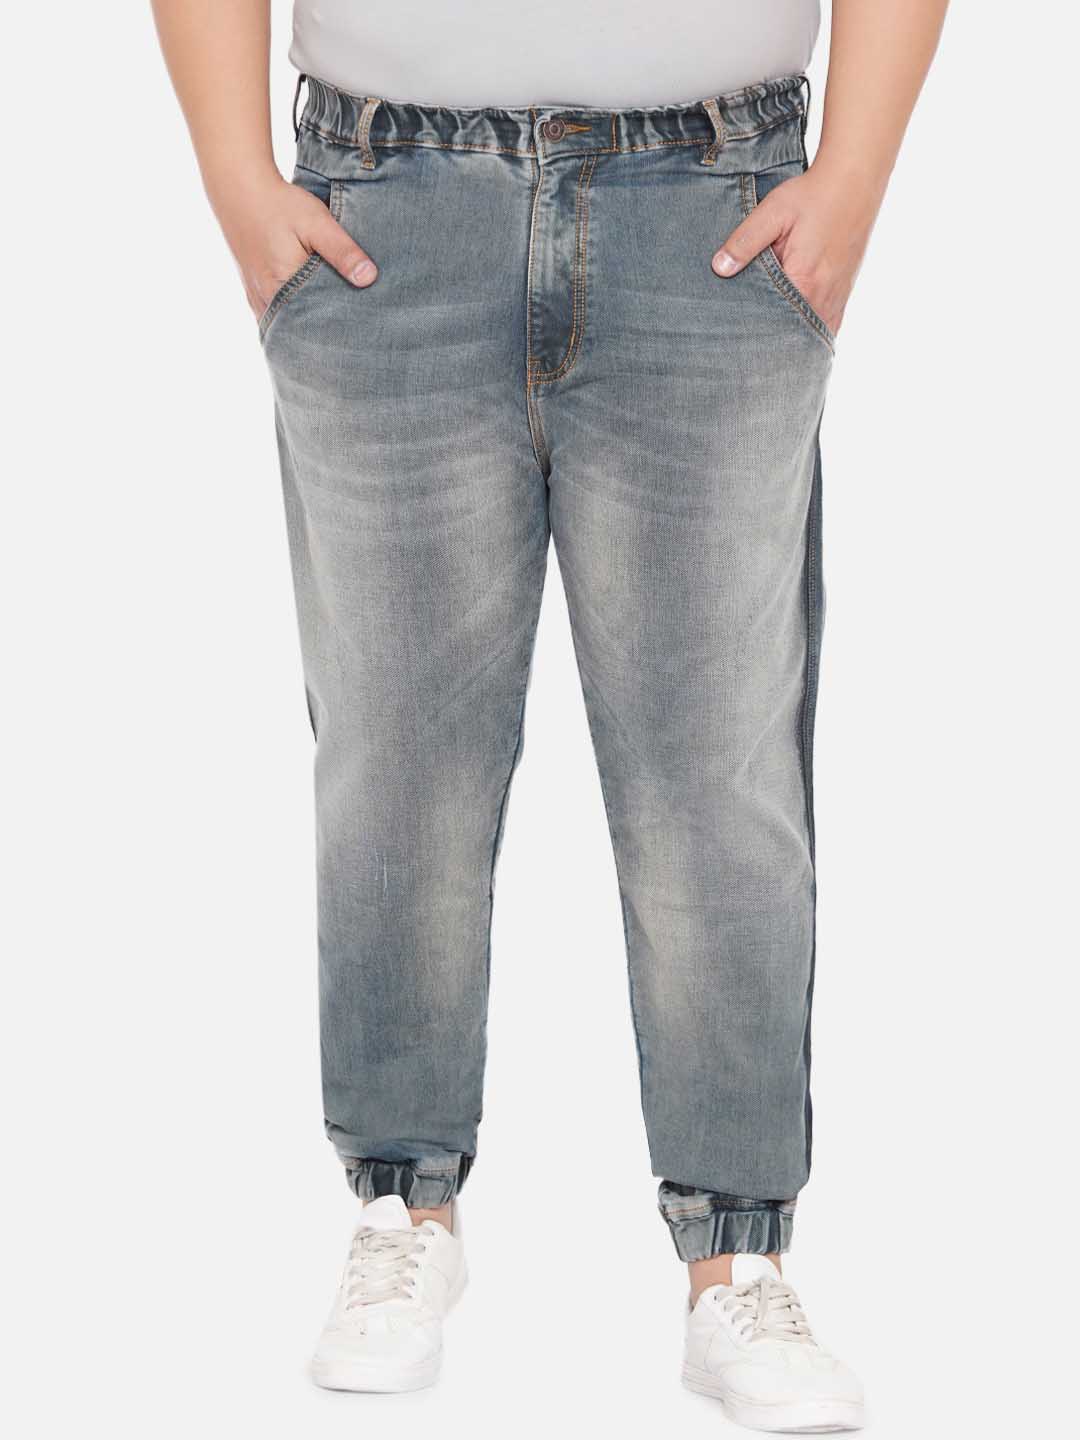 bottomwear/jeans/JPJ12231/jpj12231-1.jpg